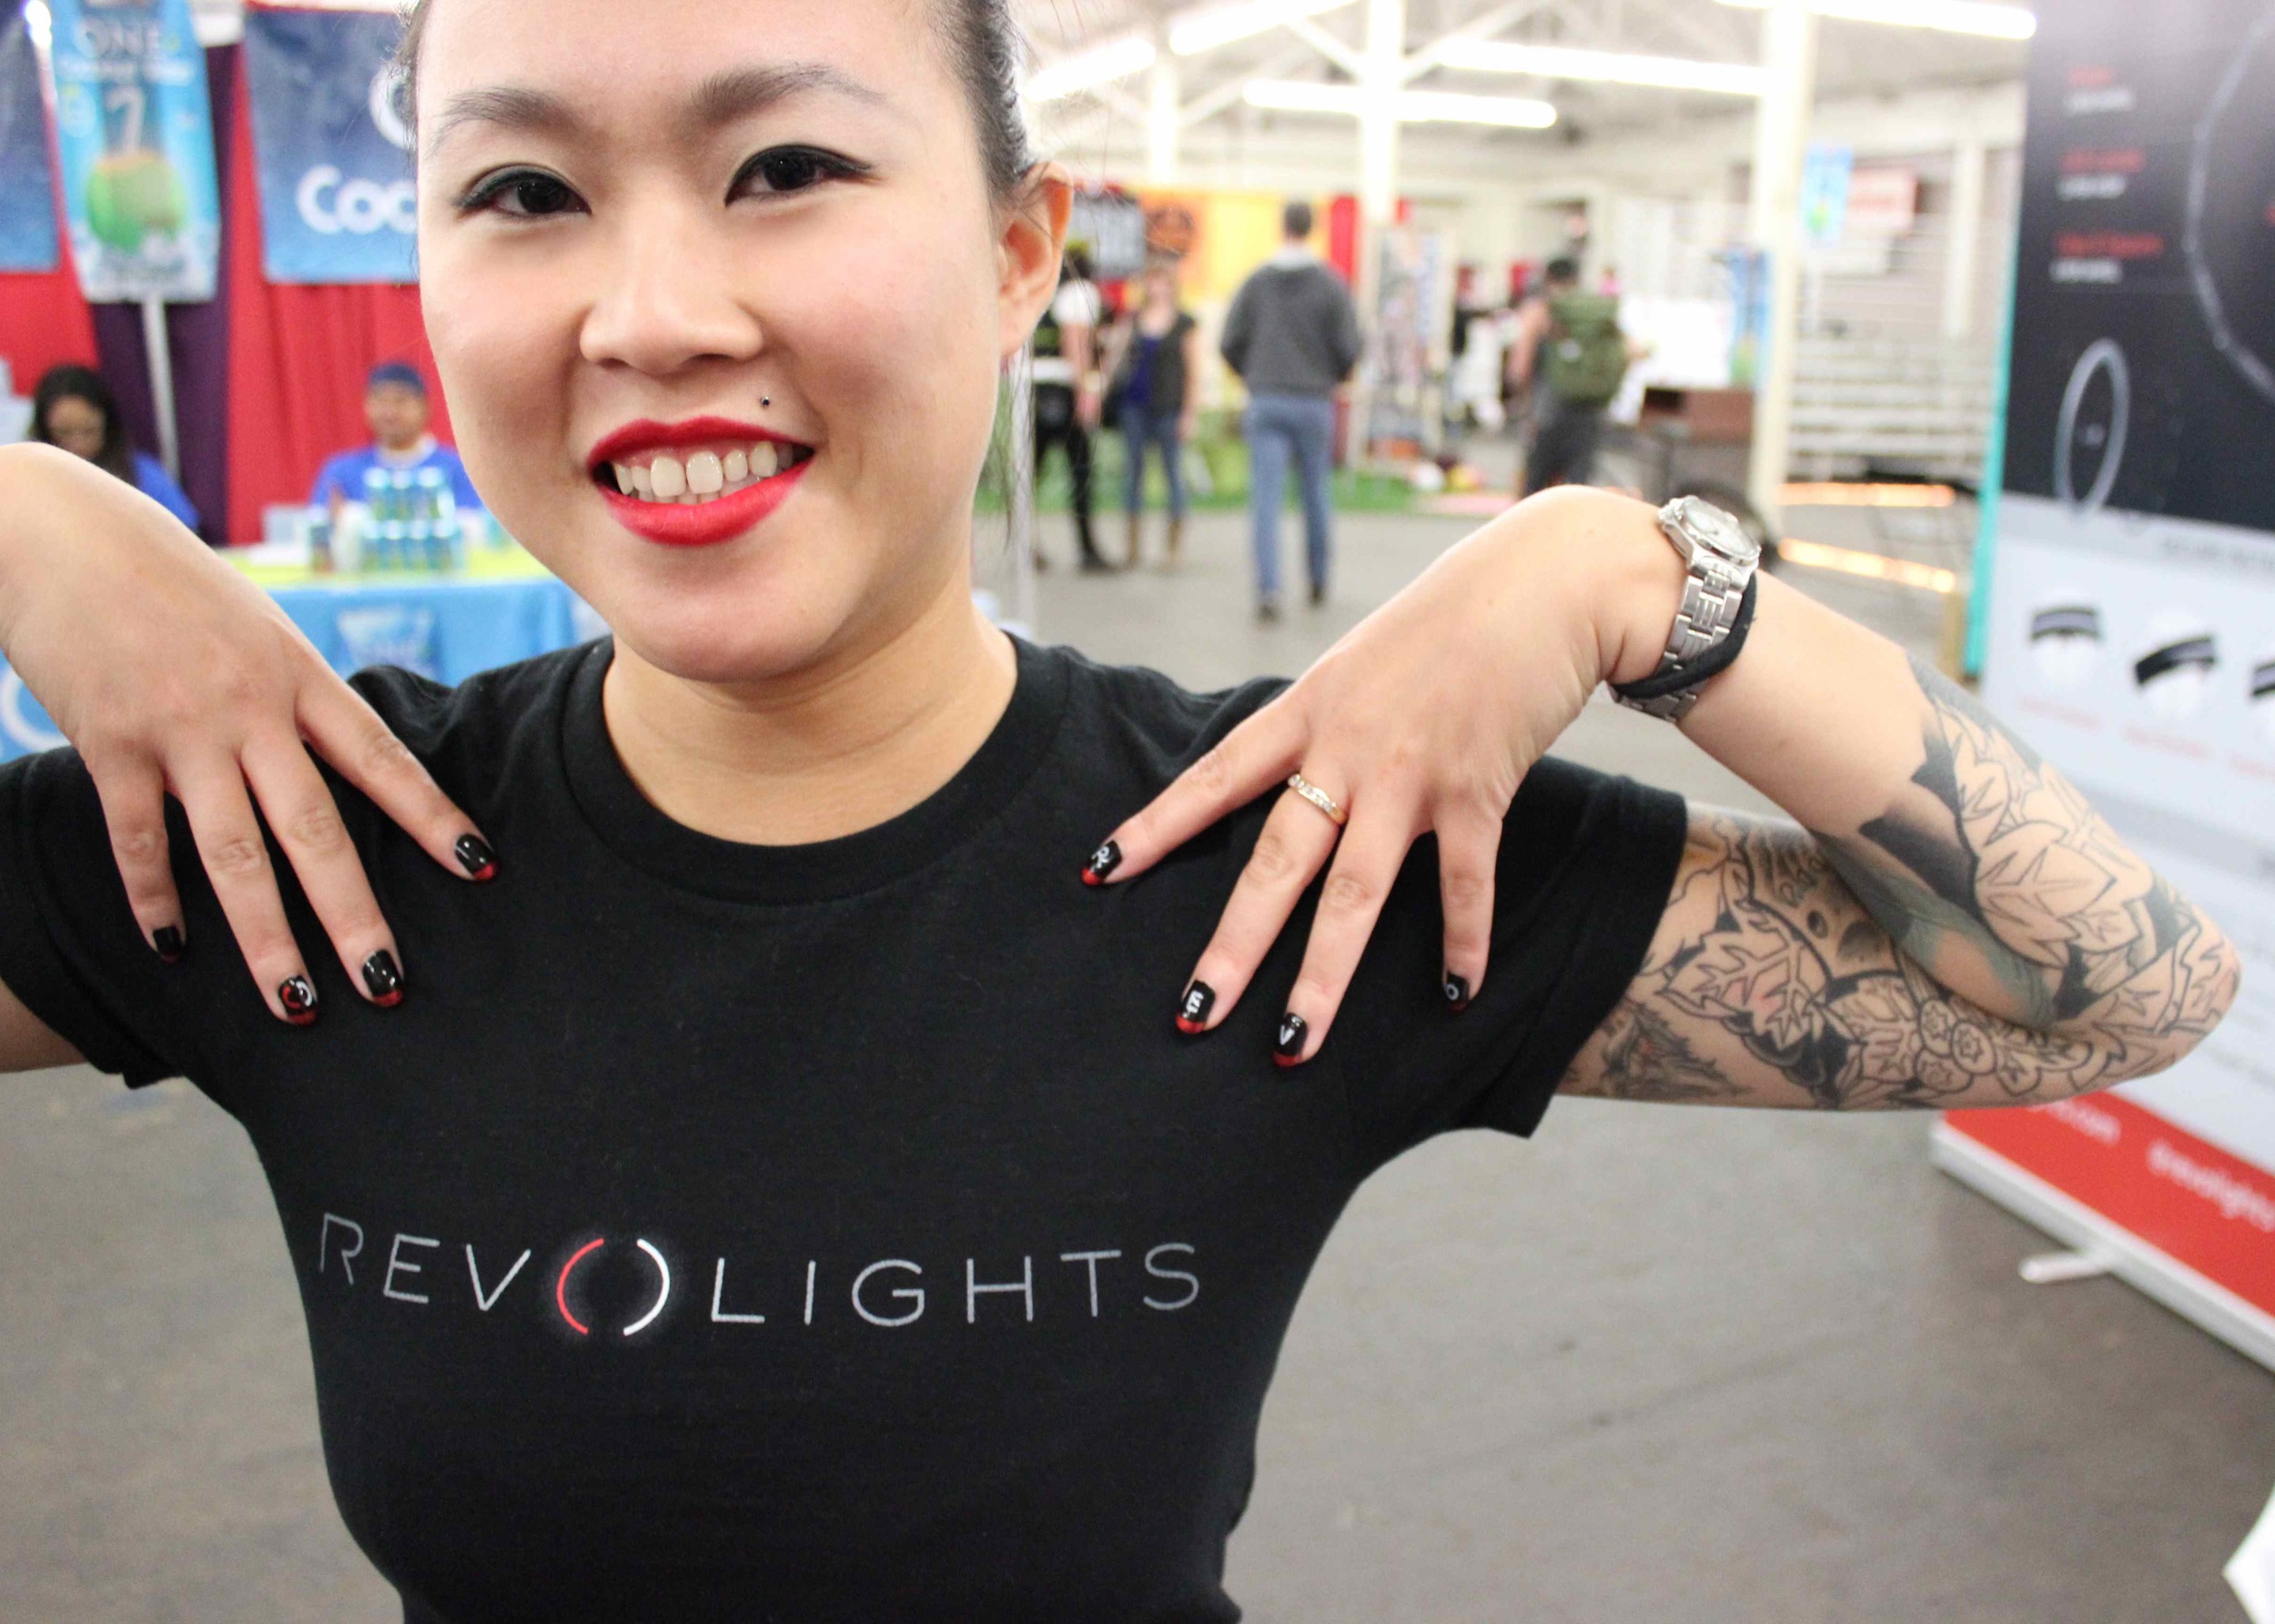 nail art, revolights, Jenn Tran, tattoos, tattoo, tattoo sleeve, asian girl, red lipstick